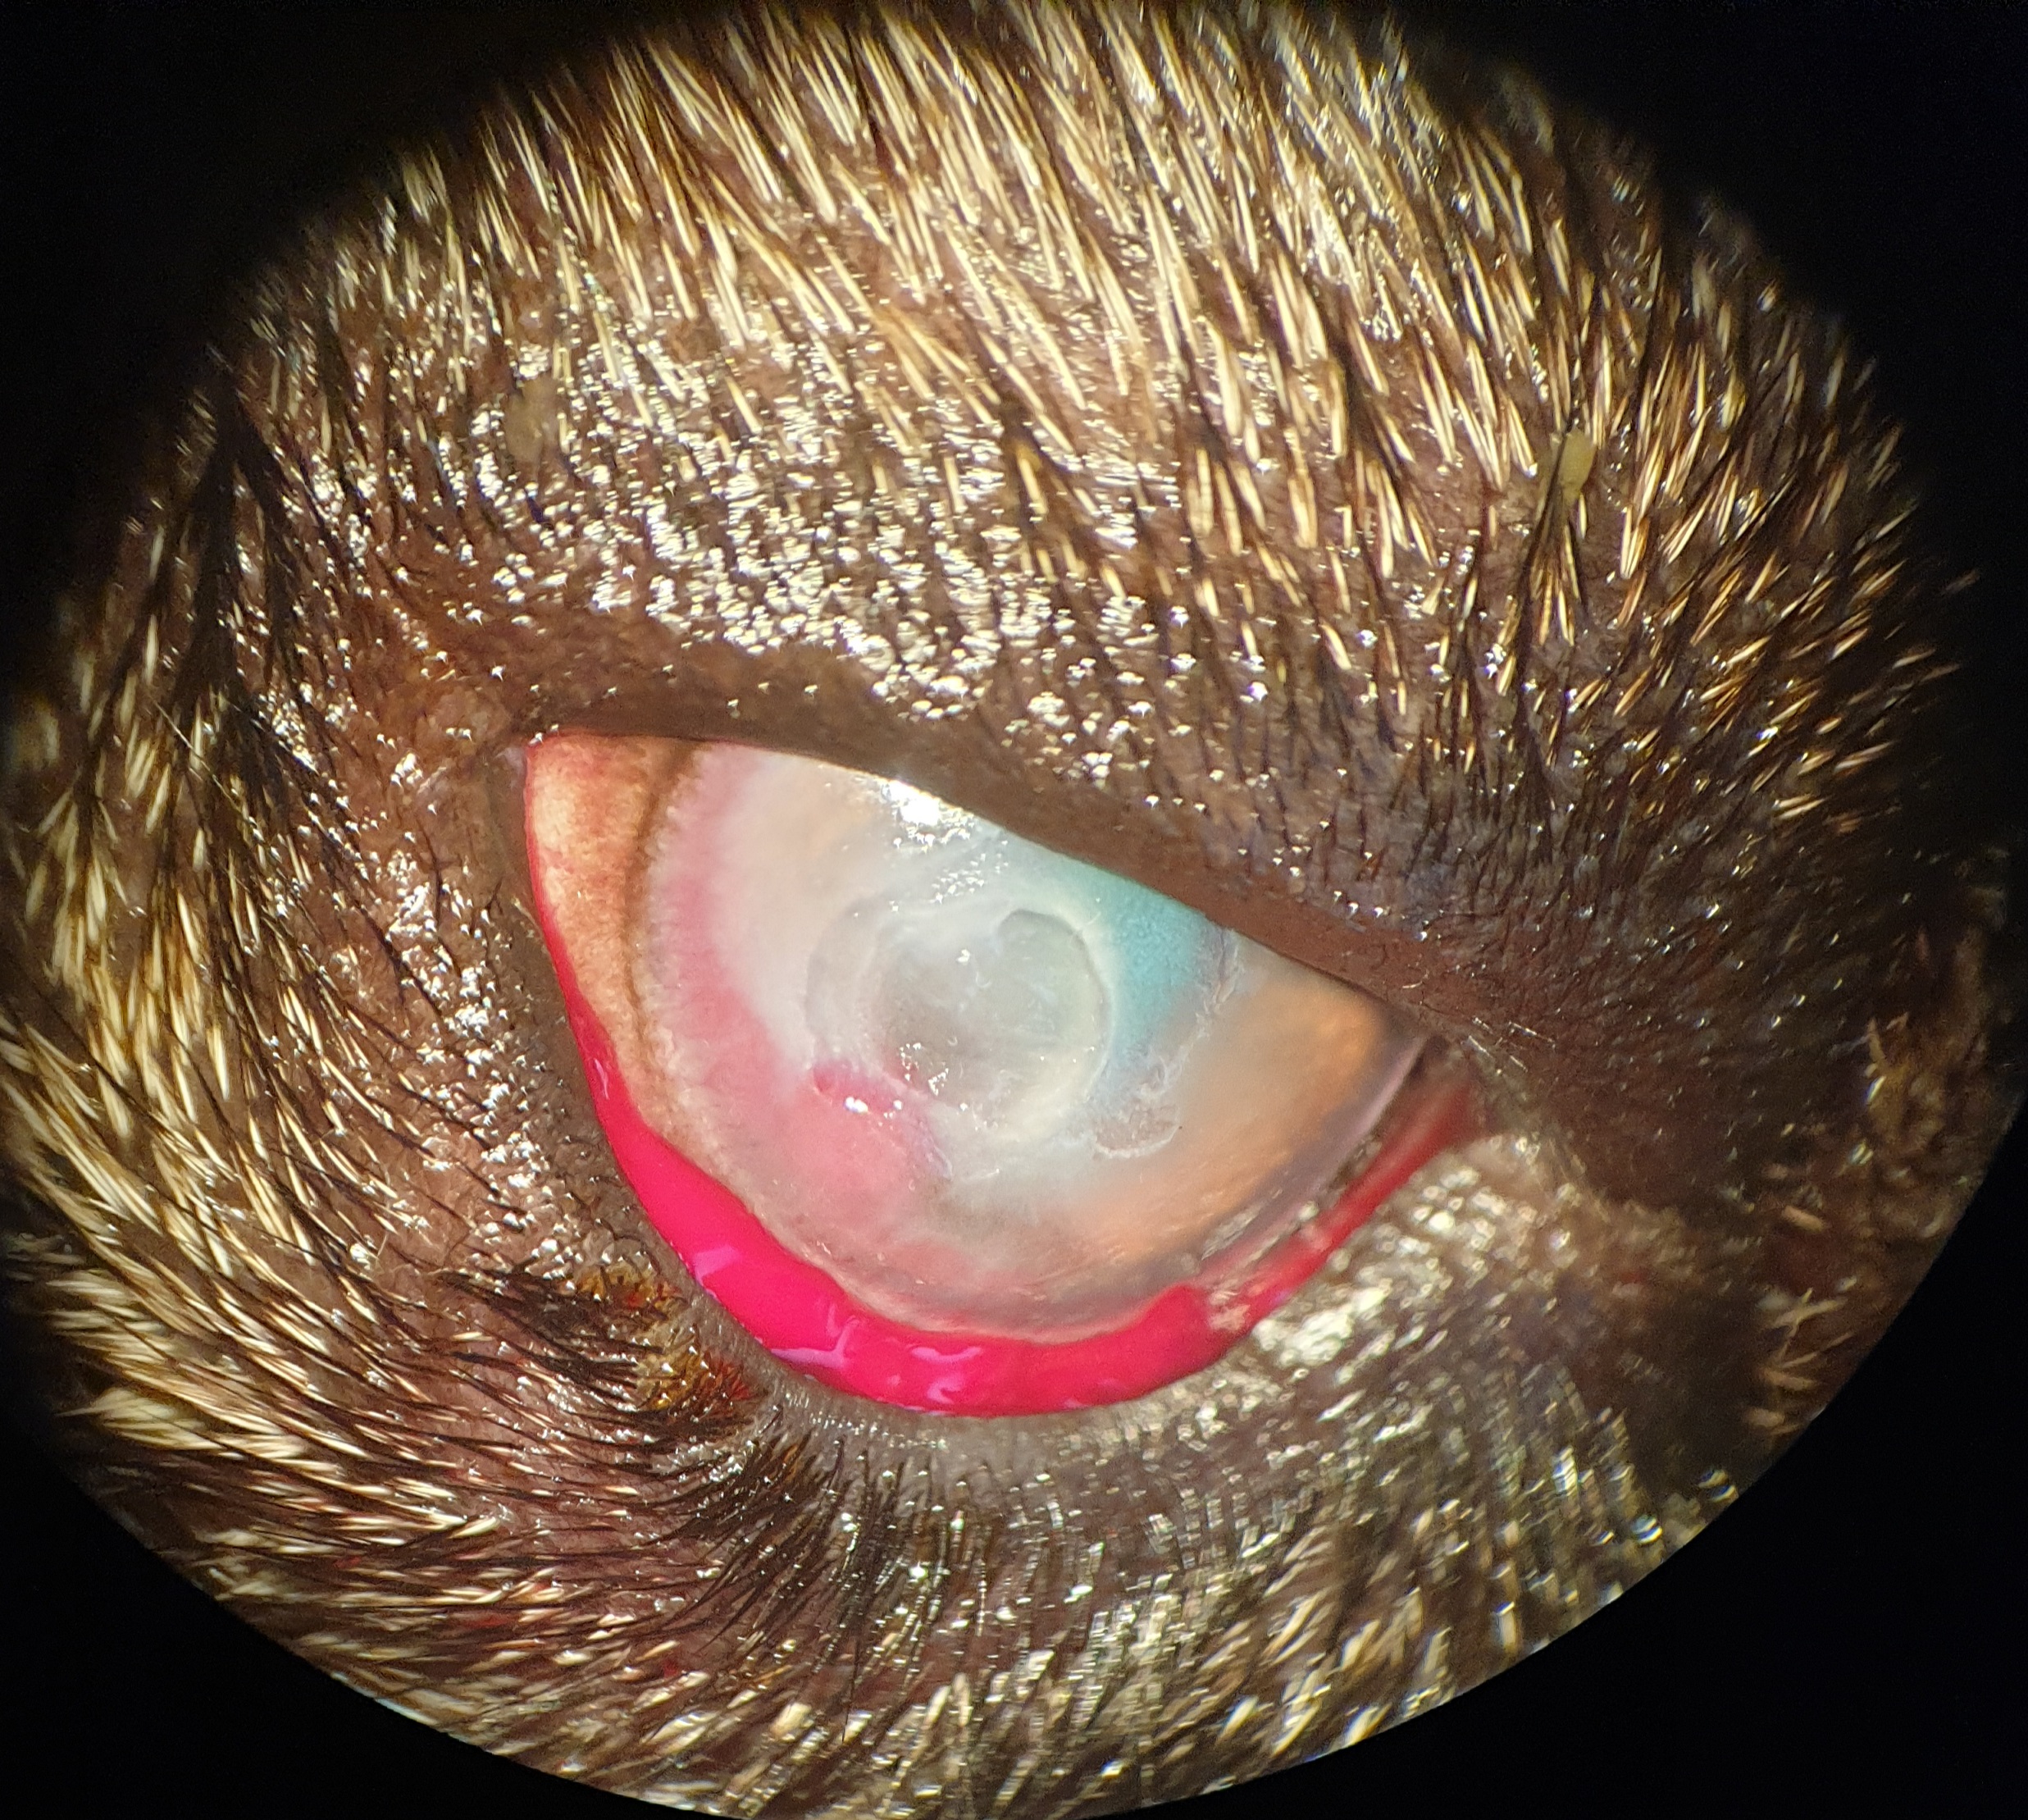 Foto des Auges unter dem OP-Mikroskop mit kleiner Blutung und aufgefrischtem Hornhautulcus.